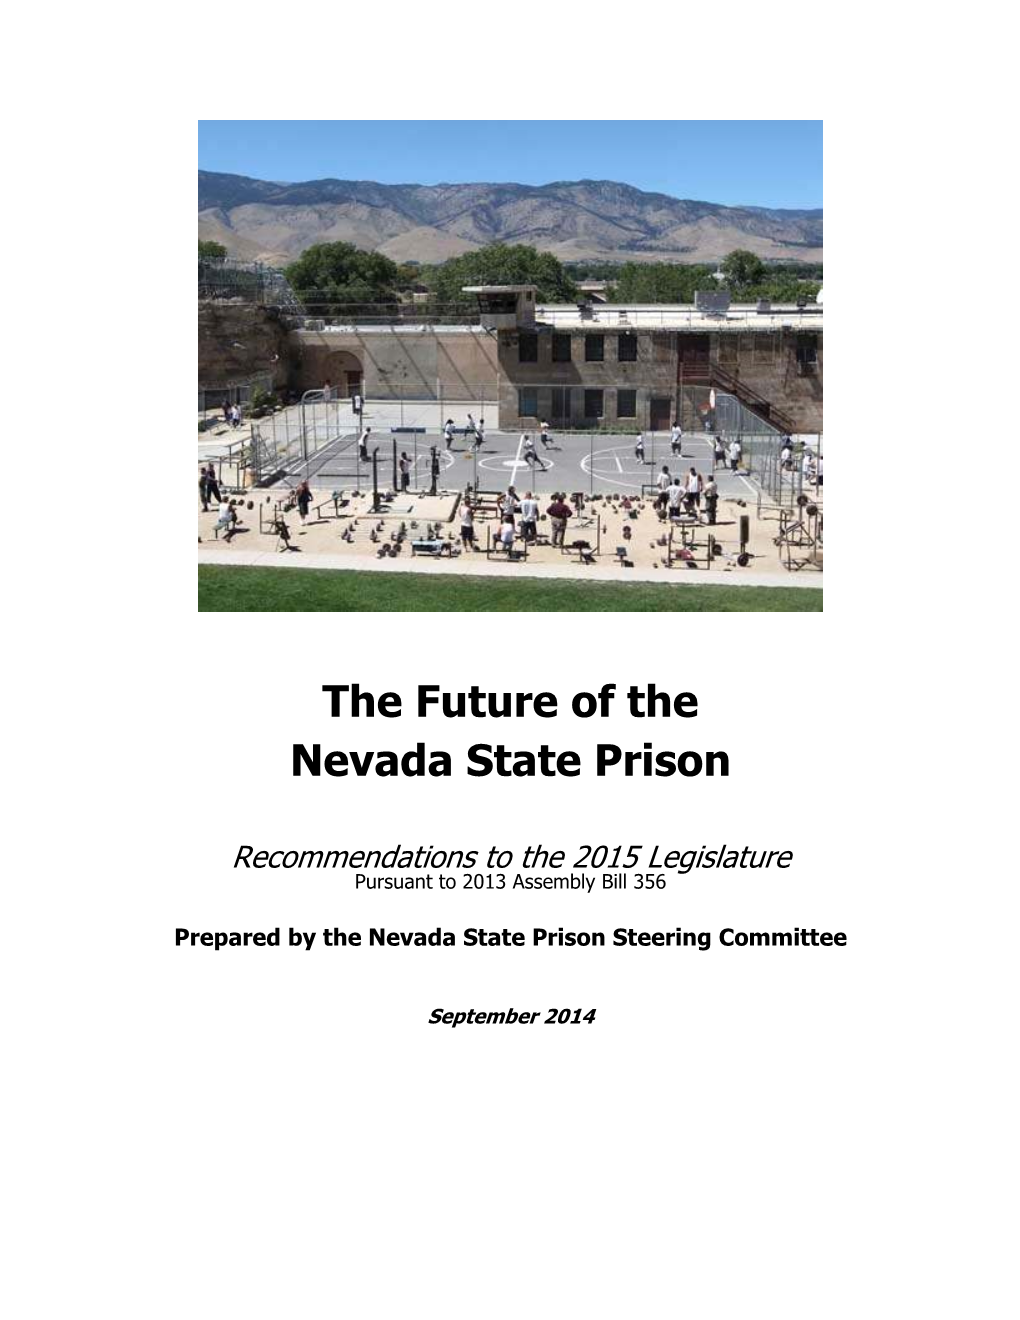 The Future of the Nevada State Prison